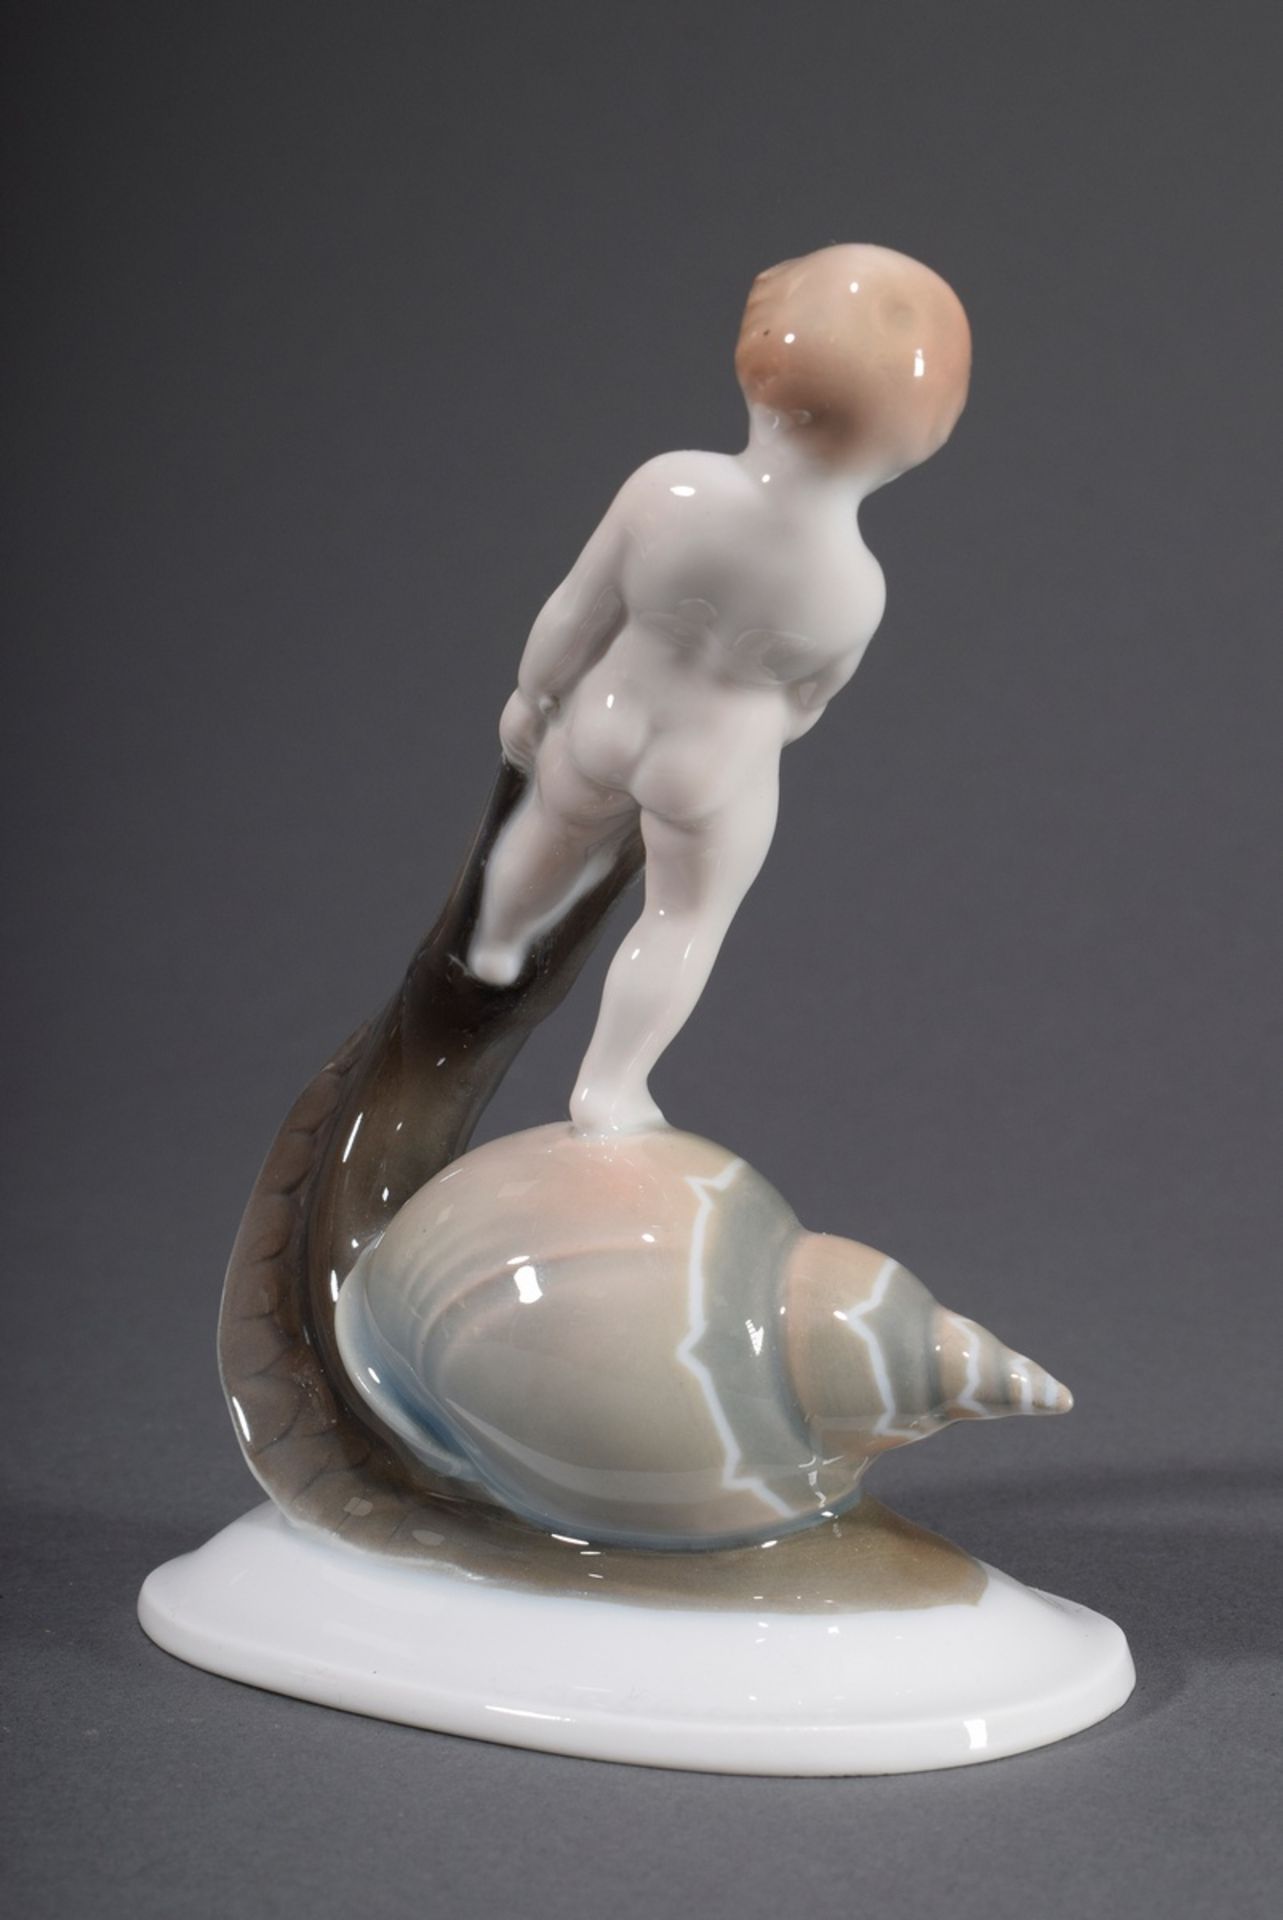 Rosenthal Figur "Schneckenreiter", dezent farbig | Rosenthal figurine "Snail rider", coloured paint - Image 2 of 4